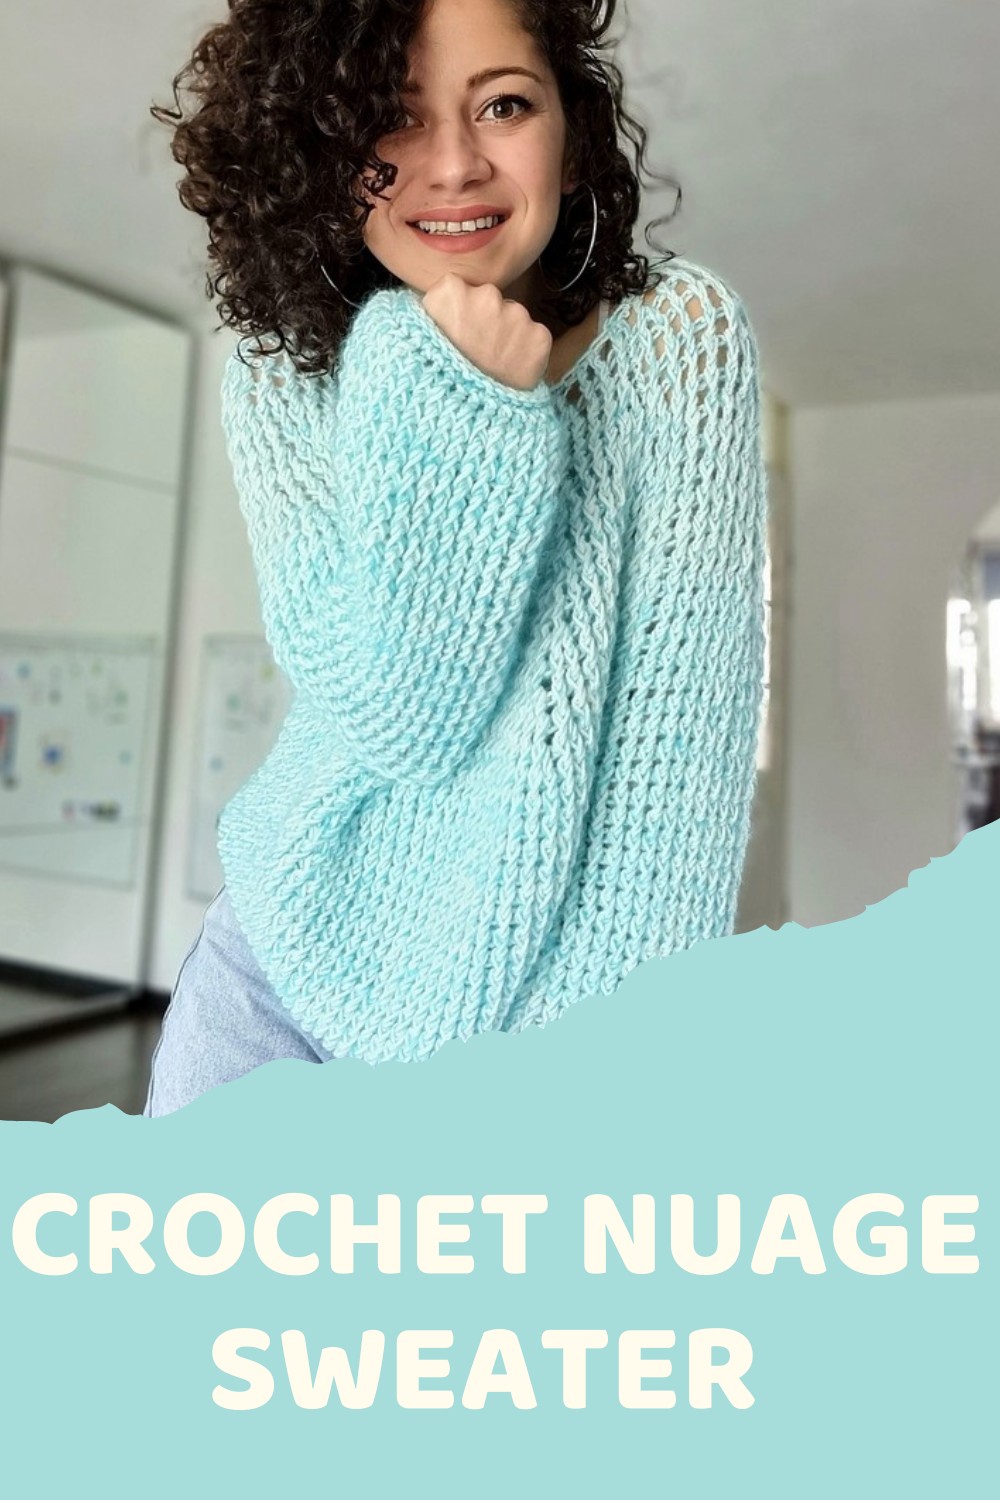 Crochet Nuage Sweater Pattern